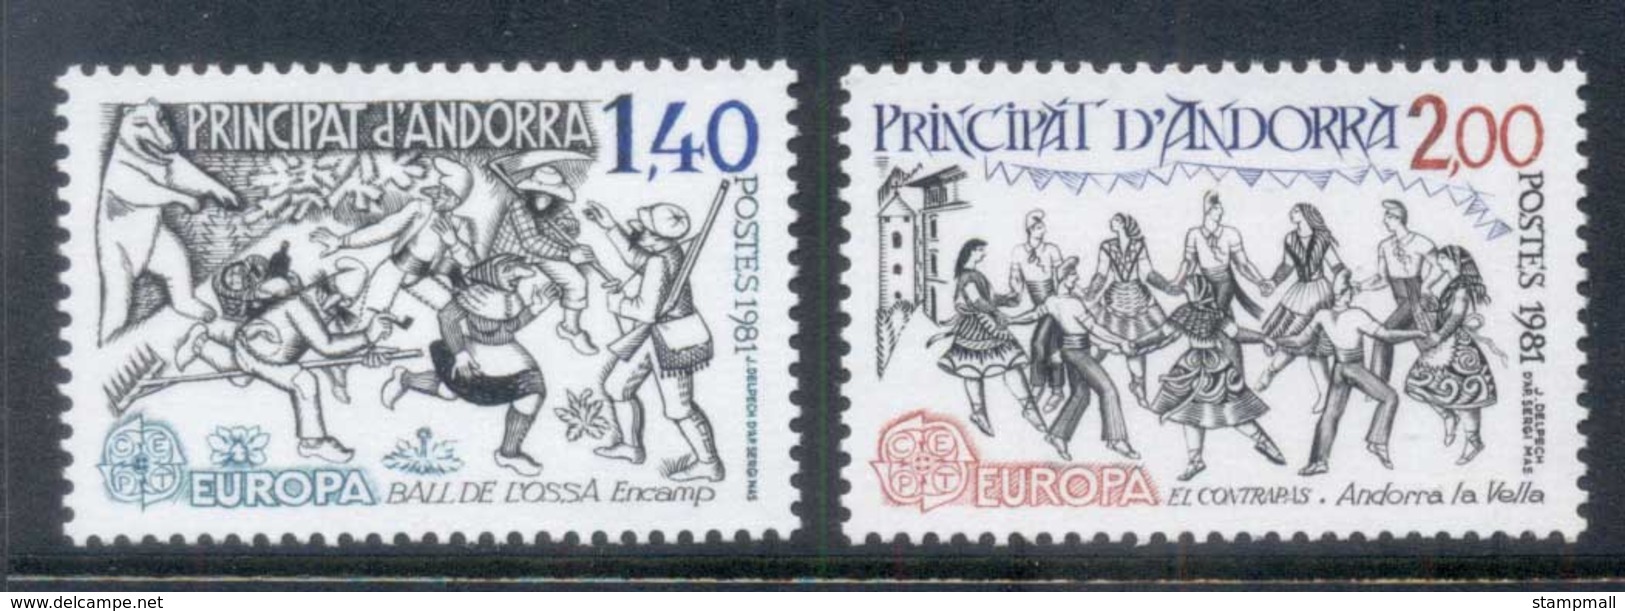 Andorra (Fr) 1981 Europa, Games, Dancing MUH - Unused Stamps